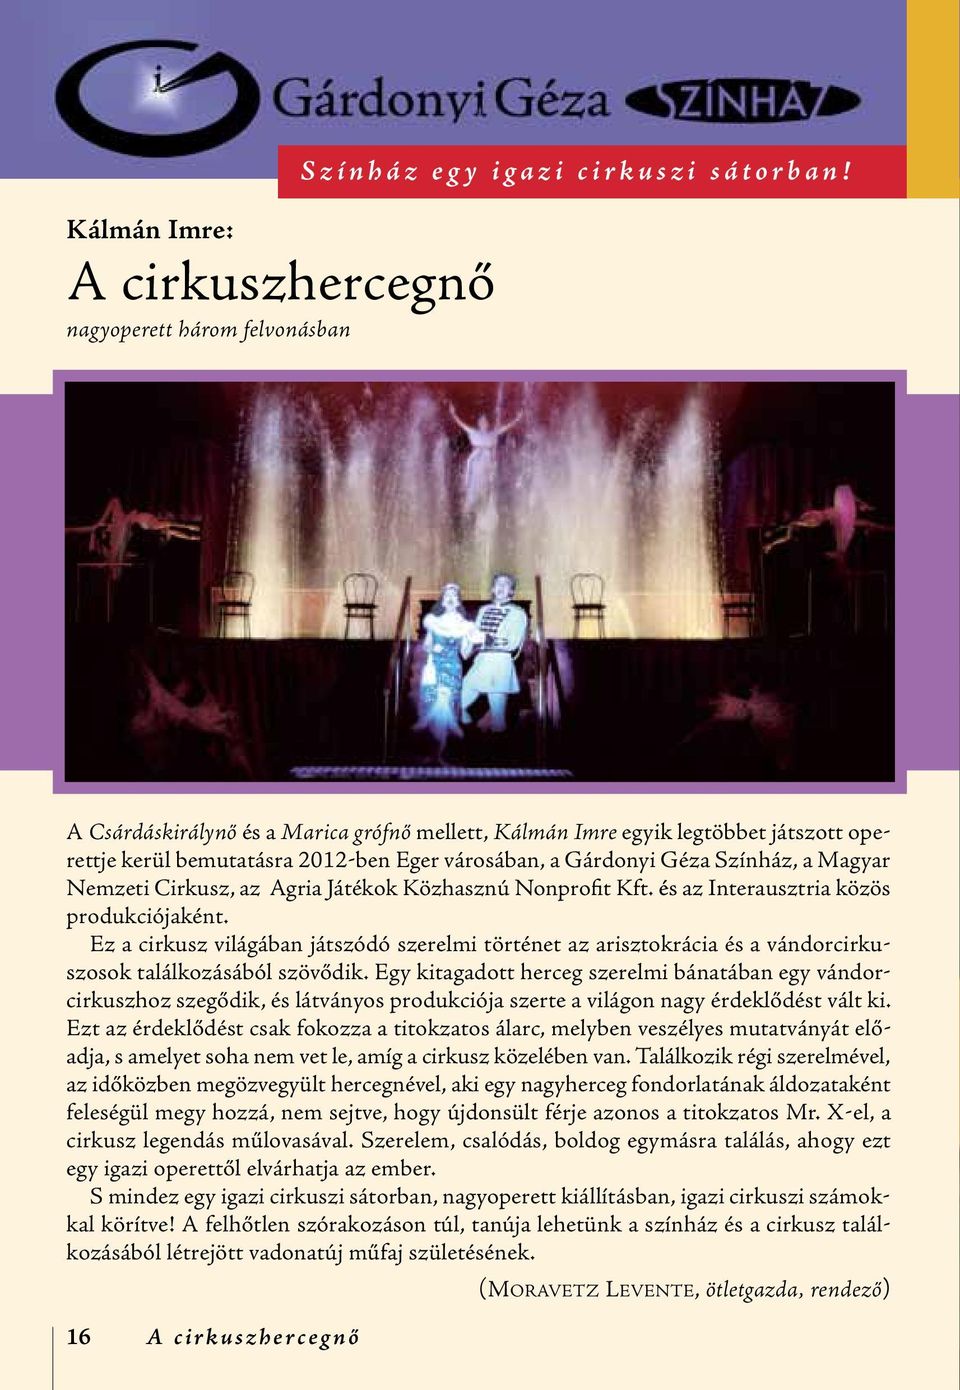 Játékok Közhasznú Nonprofit Kft. és az Interausztria közös produkciójaként. Ez a cirkusz világában játszódó szerelmi történet az arisztokrácia és a vándorcirkuszosok találkozásából szövődik.